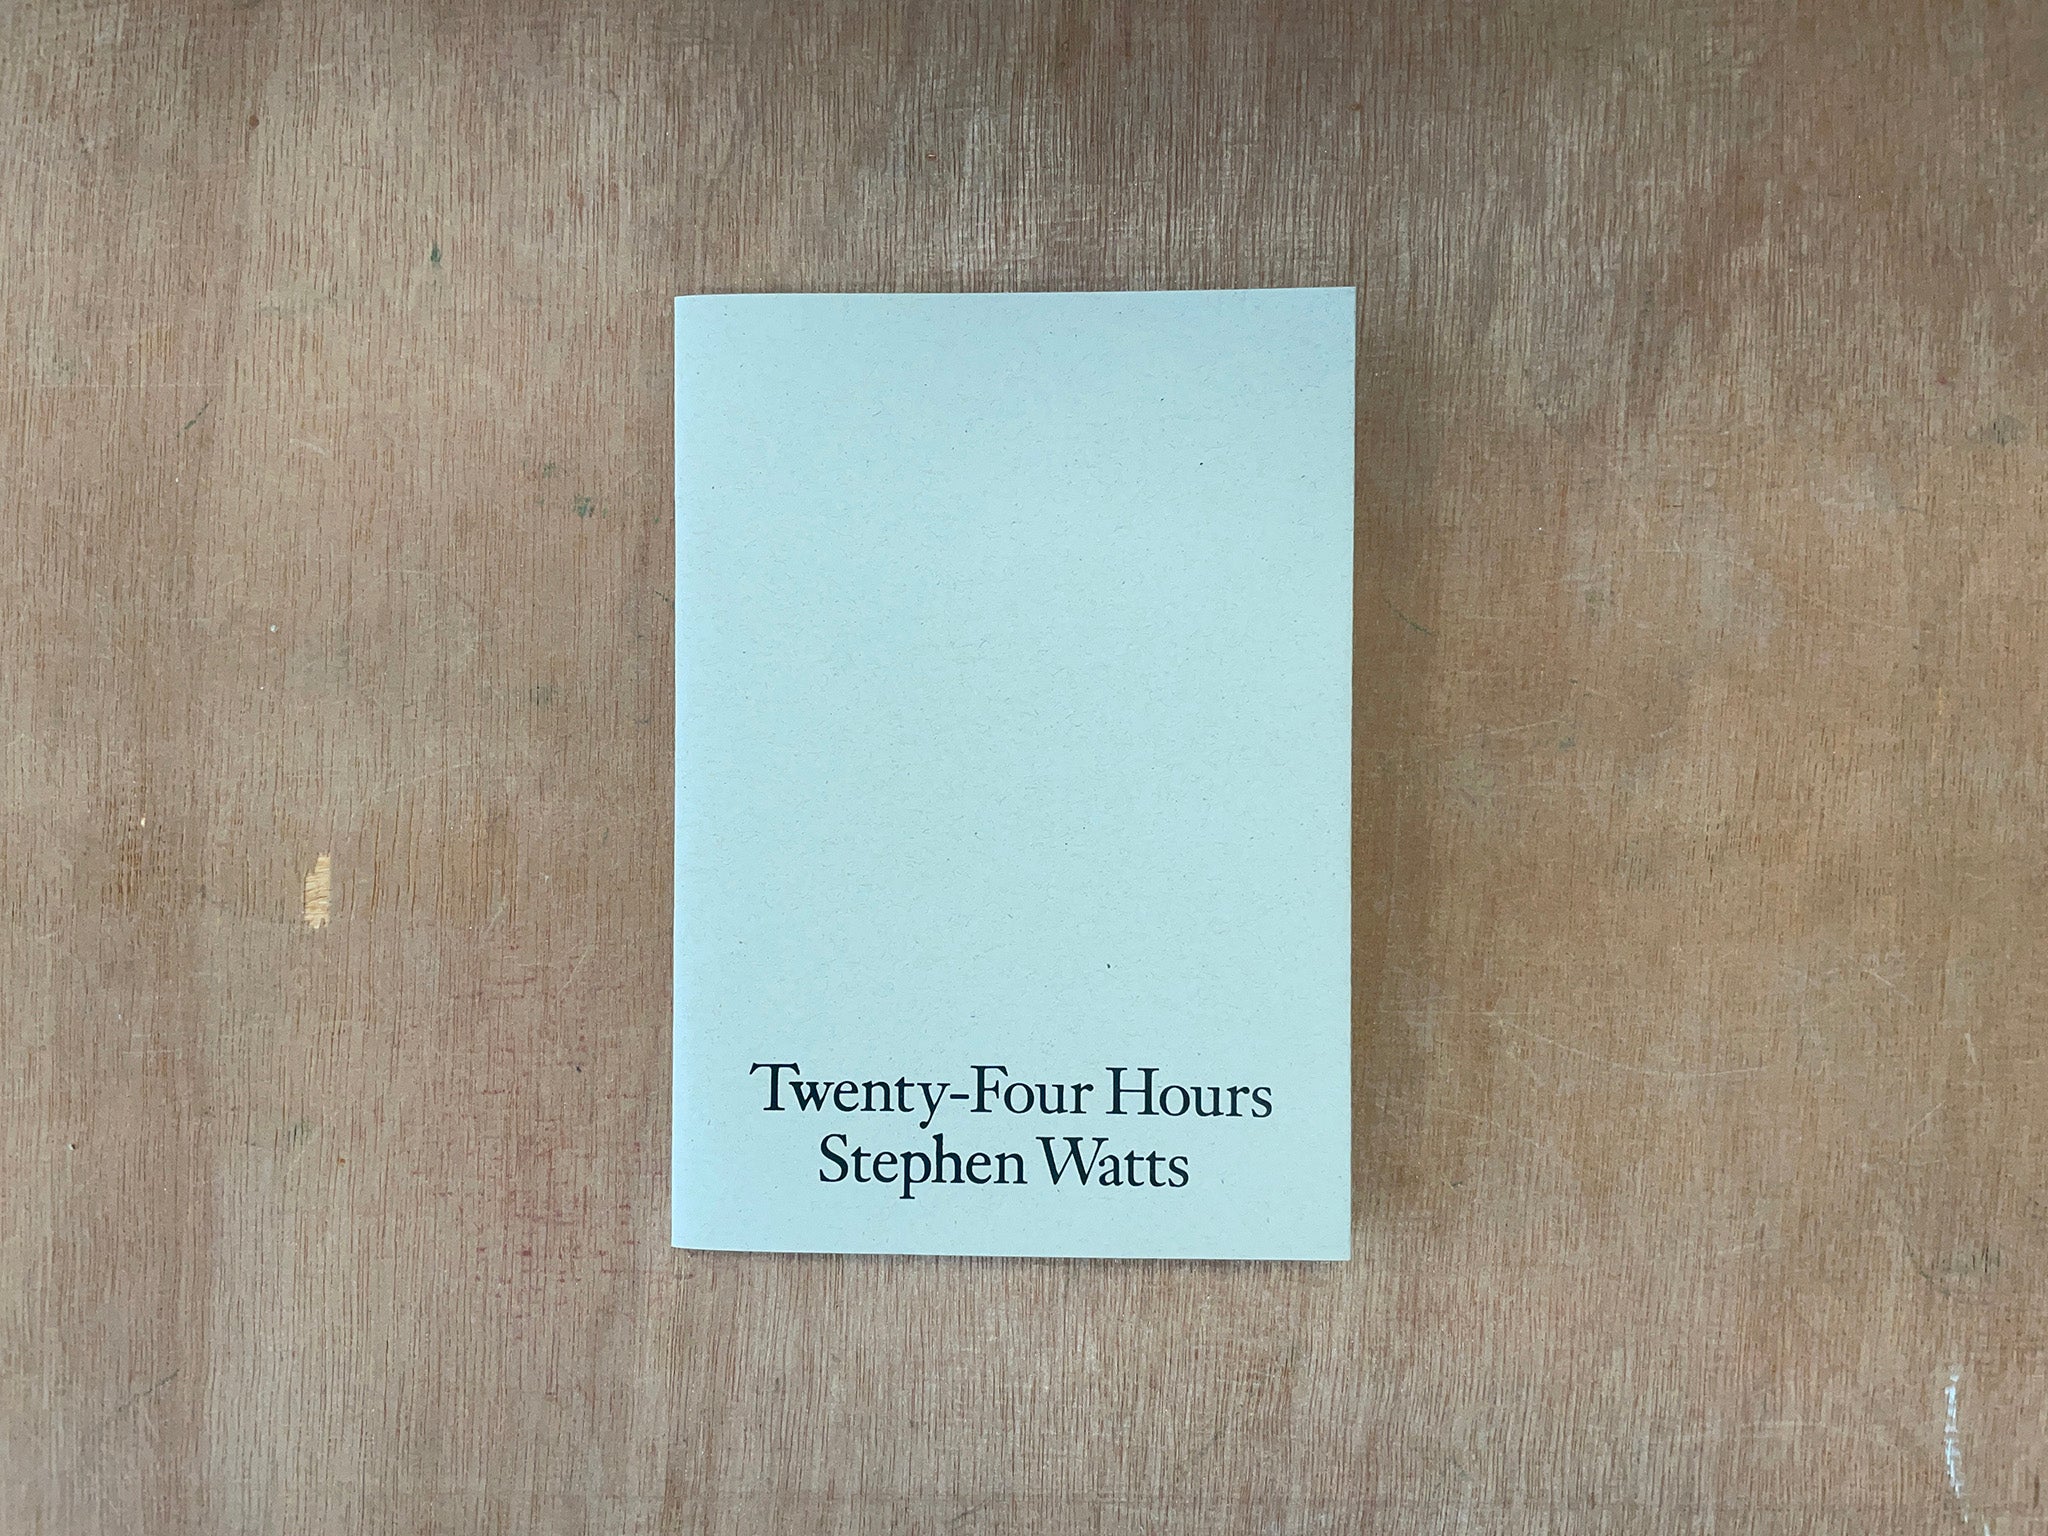 TWENTY-FOUR HOURS by Stephen Watts